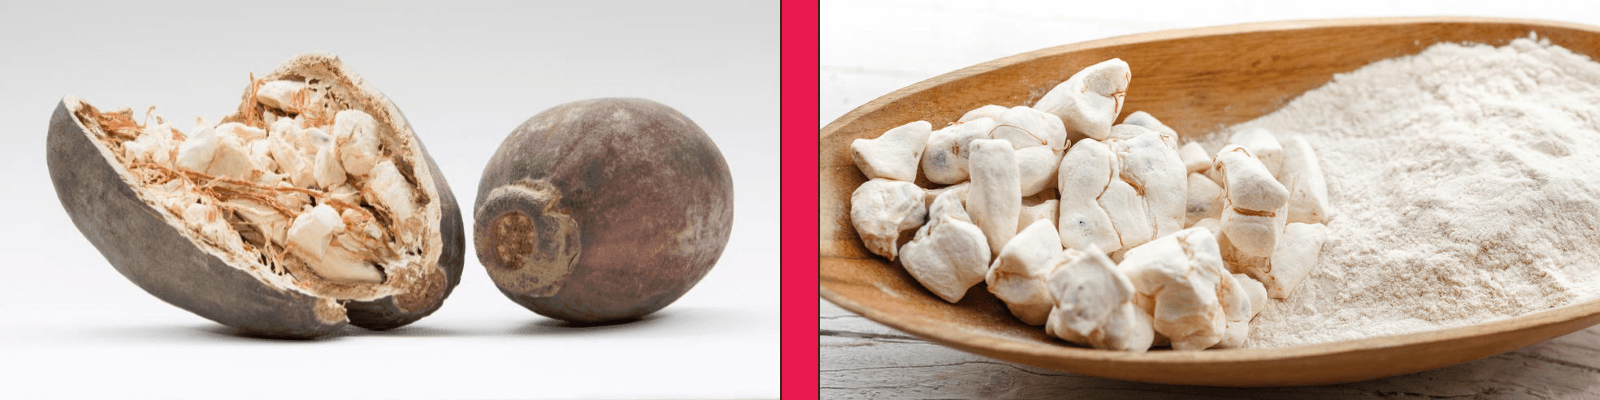 benefits of baobab powder